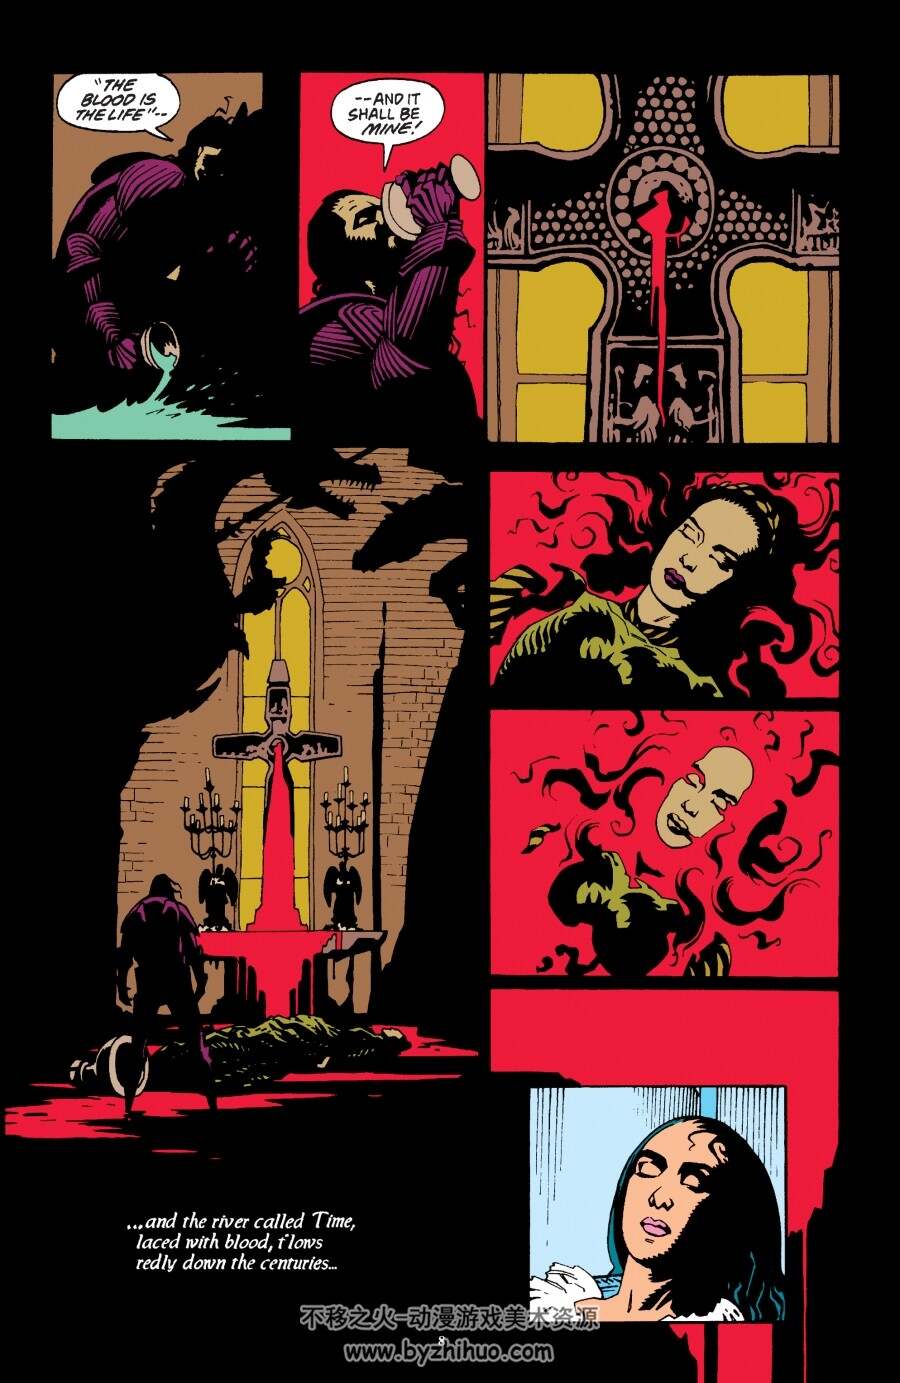 惊情四百年 Bram Stoker's Dracula 2019年再版 百度网盘下载 139M